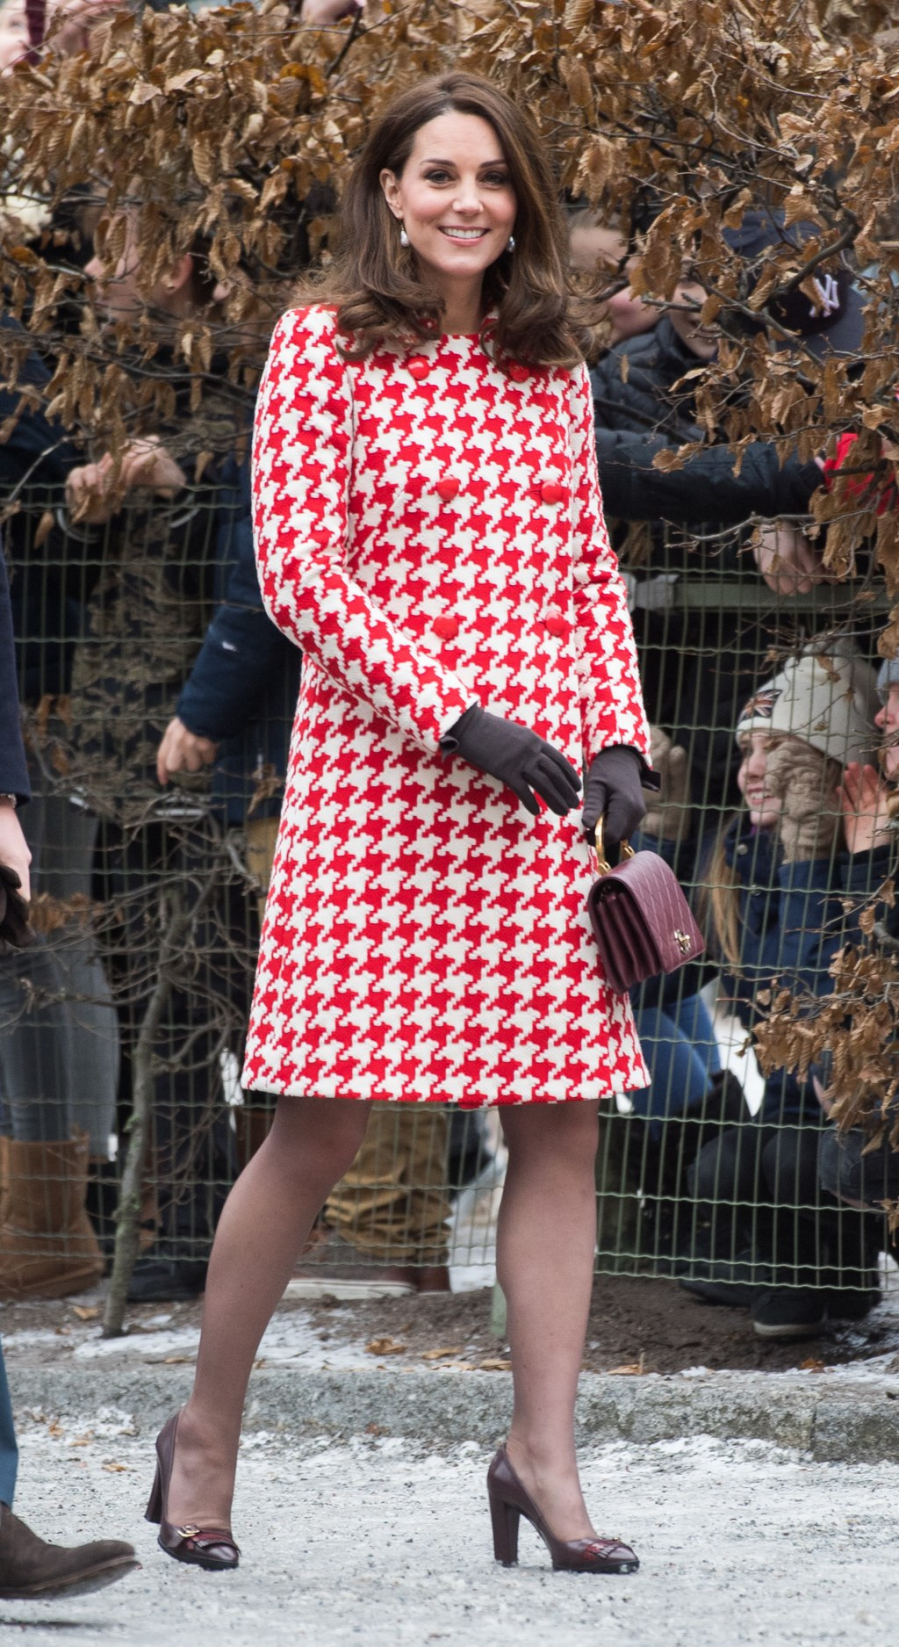 Tại một sự kiện khác, cùng diện phong cách tương tự nhưng lần này Kate Middleton nổi bật hơn với mẫu váy len có họa tiết đỏ trắng cũng của nhà mốt Alexander McQueen và sử dụng lại túi xách màu đỏ mận của Chanel, kết hợp cùng bộ với giày cao gót.